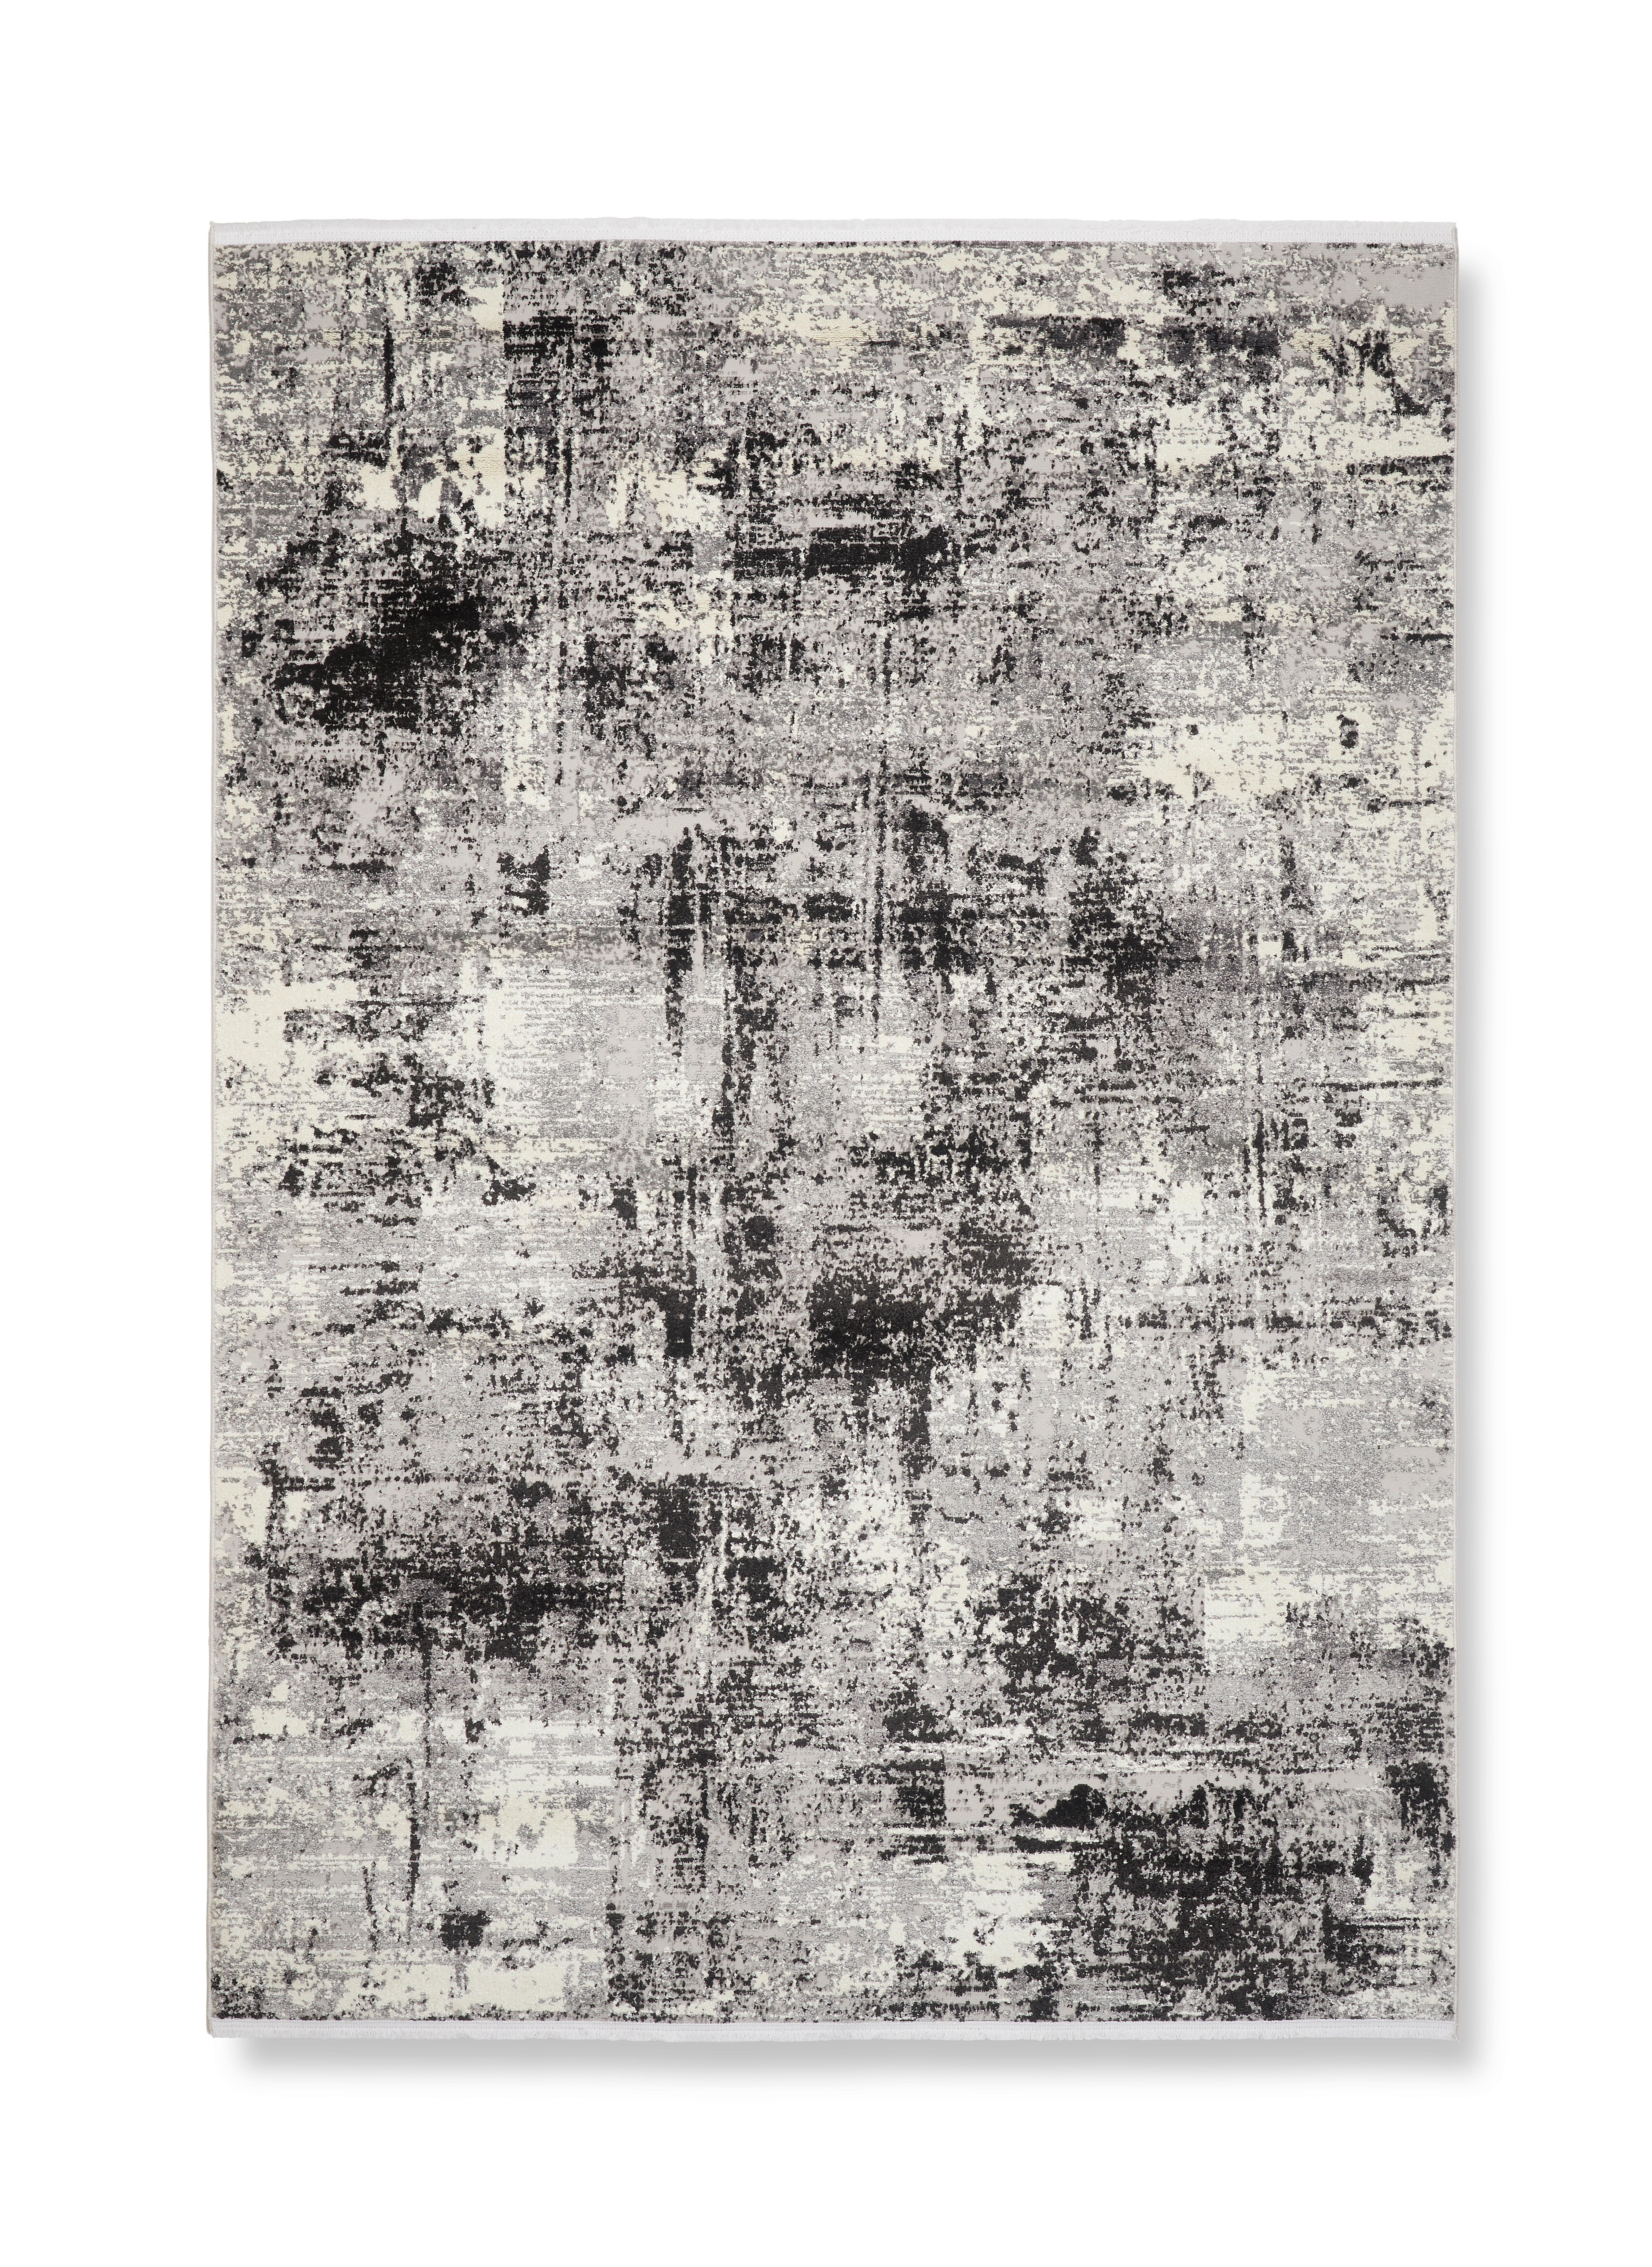 Tkaný Koberec Malik 1, 80/150cm - černá/antracitová, Moderní, textil (80/150cm) - Modern Living